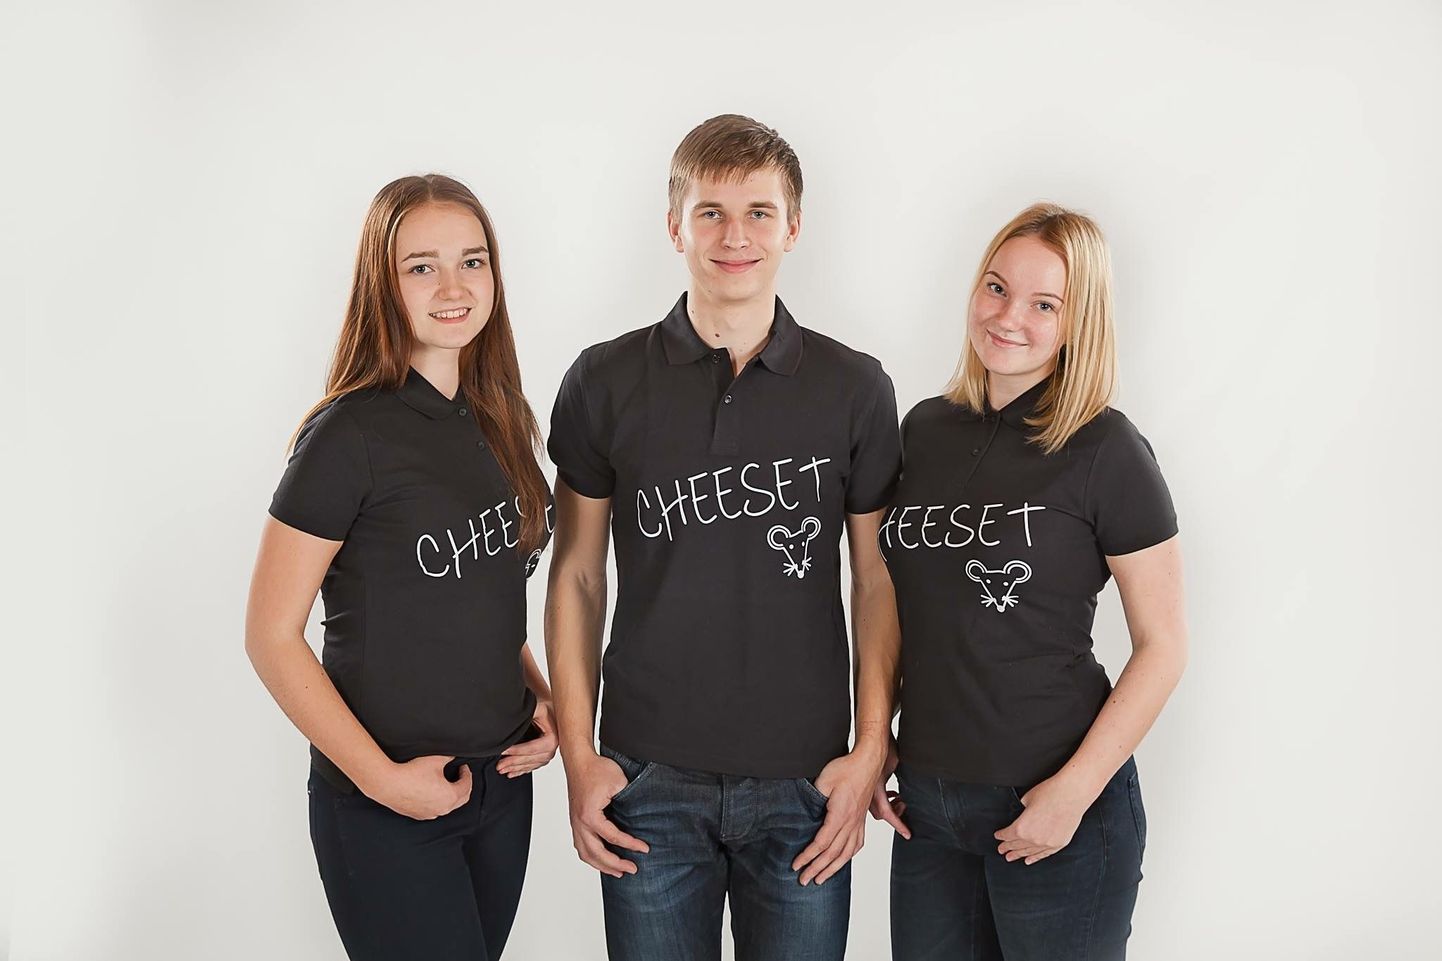 Õpilasfirma Cheeset meeskond koosseisus: Kristiina Kõrbe (vasakult), Raimond Vink ja Kätlin Rest.